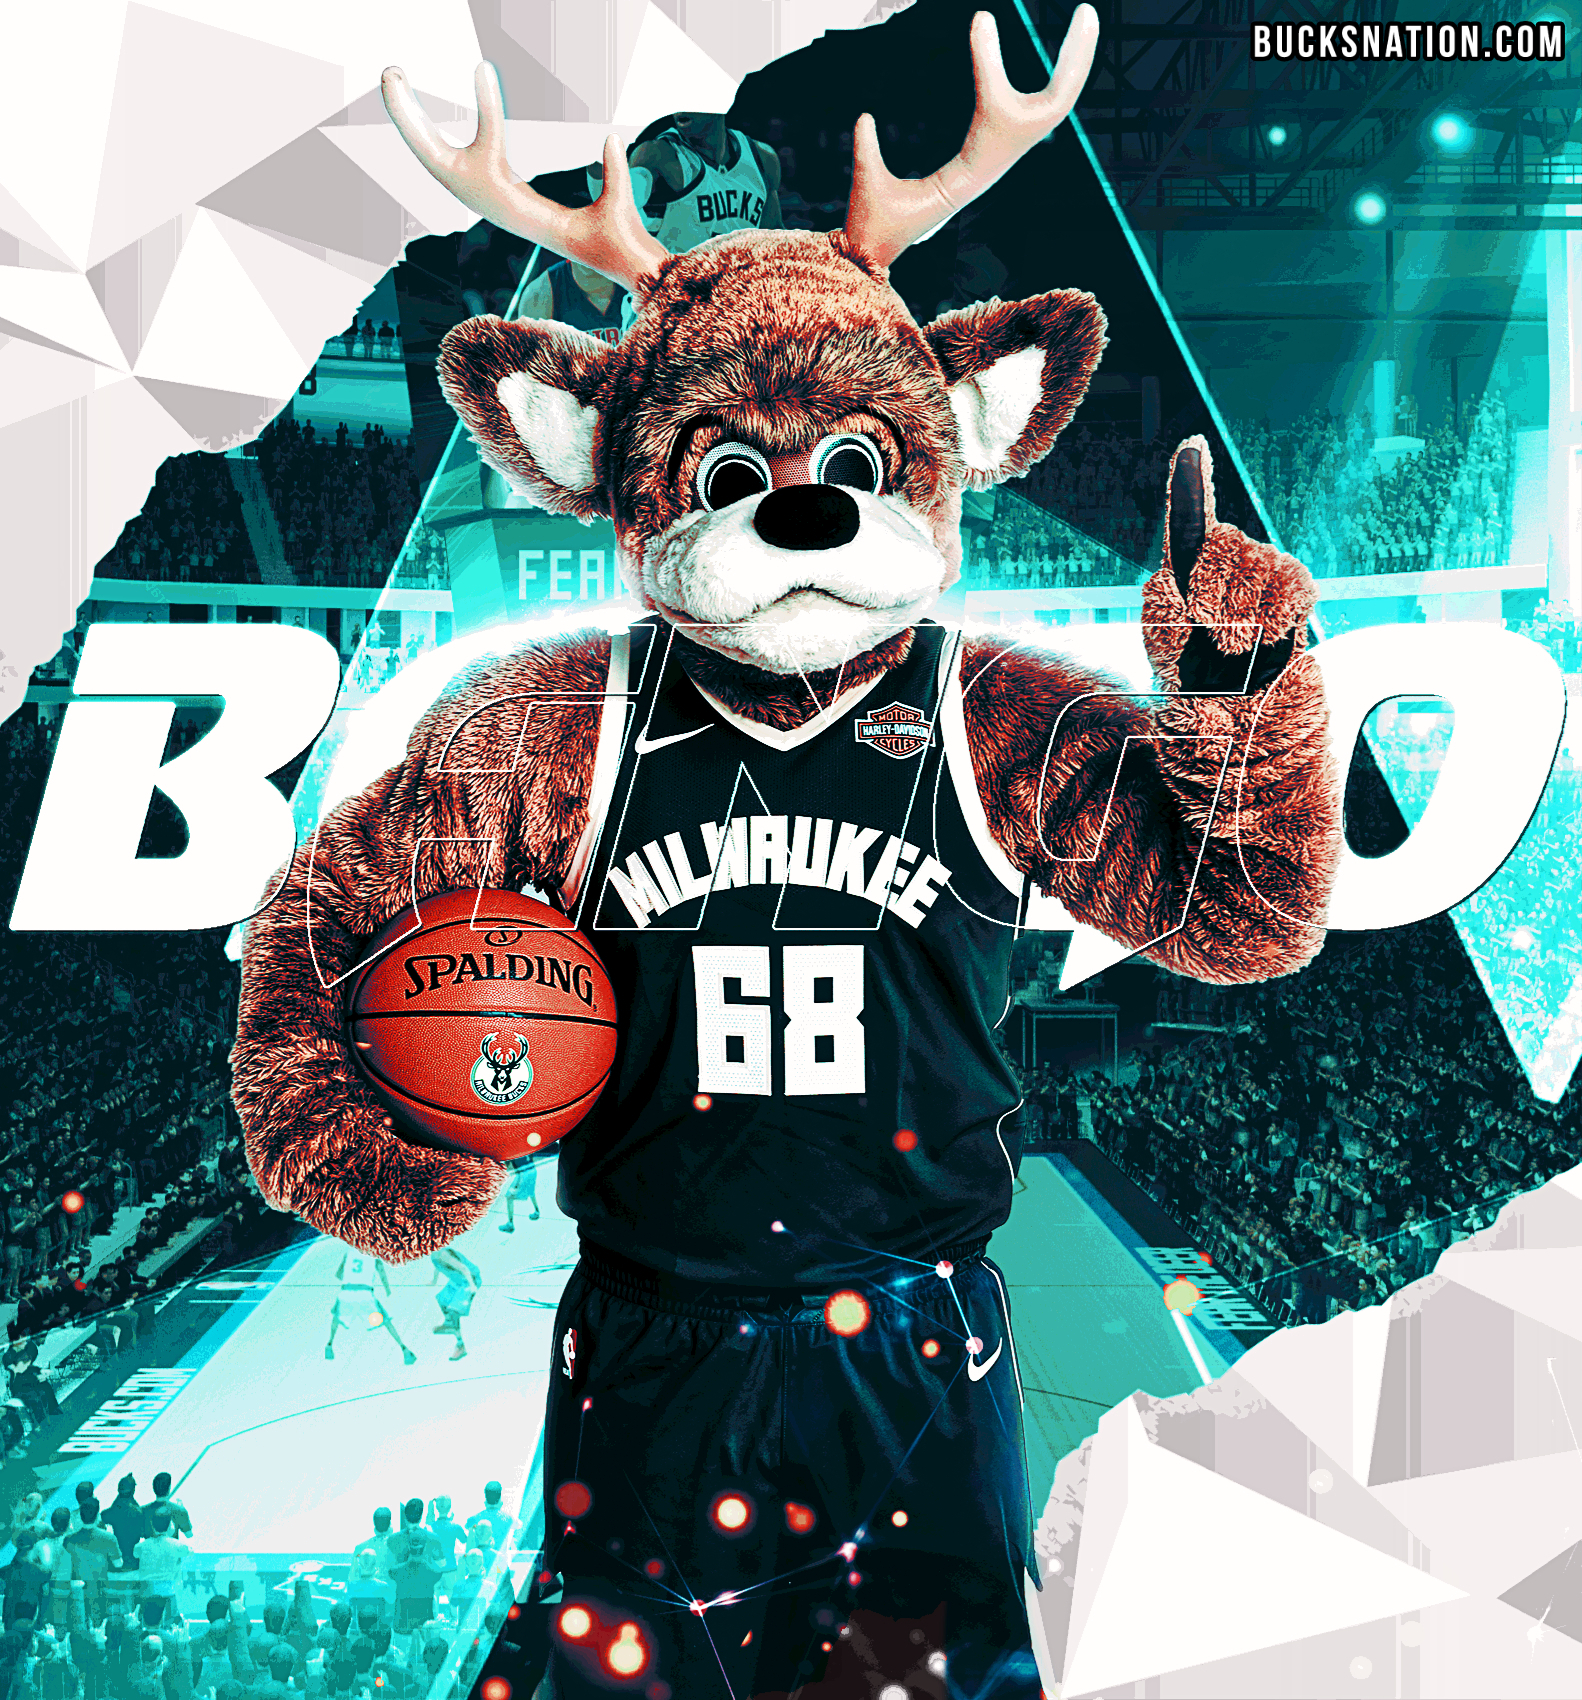 Bango Artwork: Milwaukee Bucks Mascot